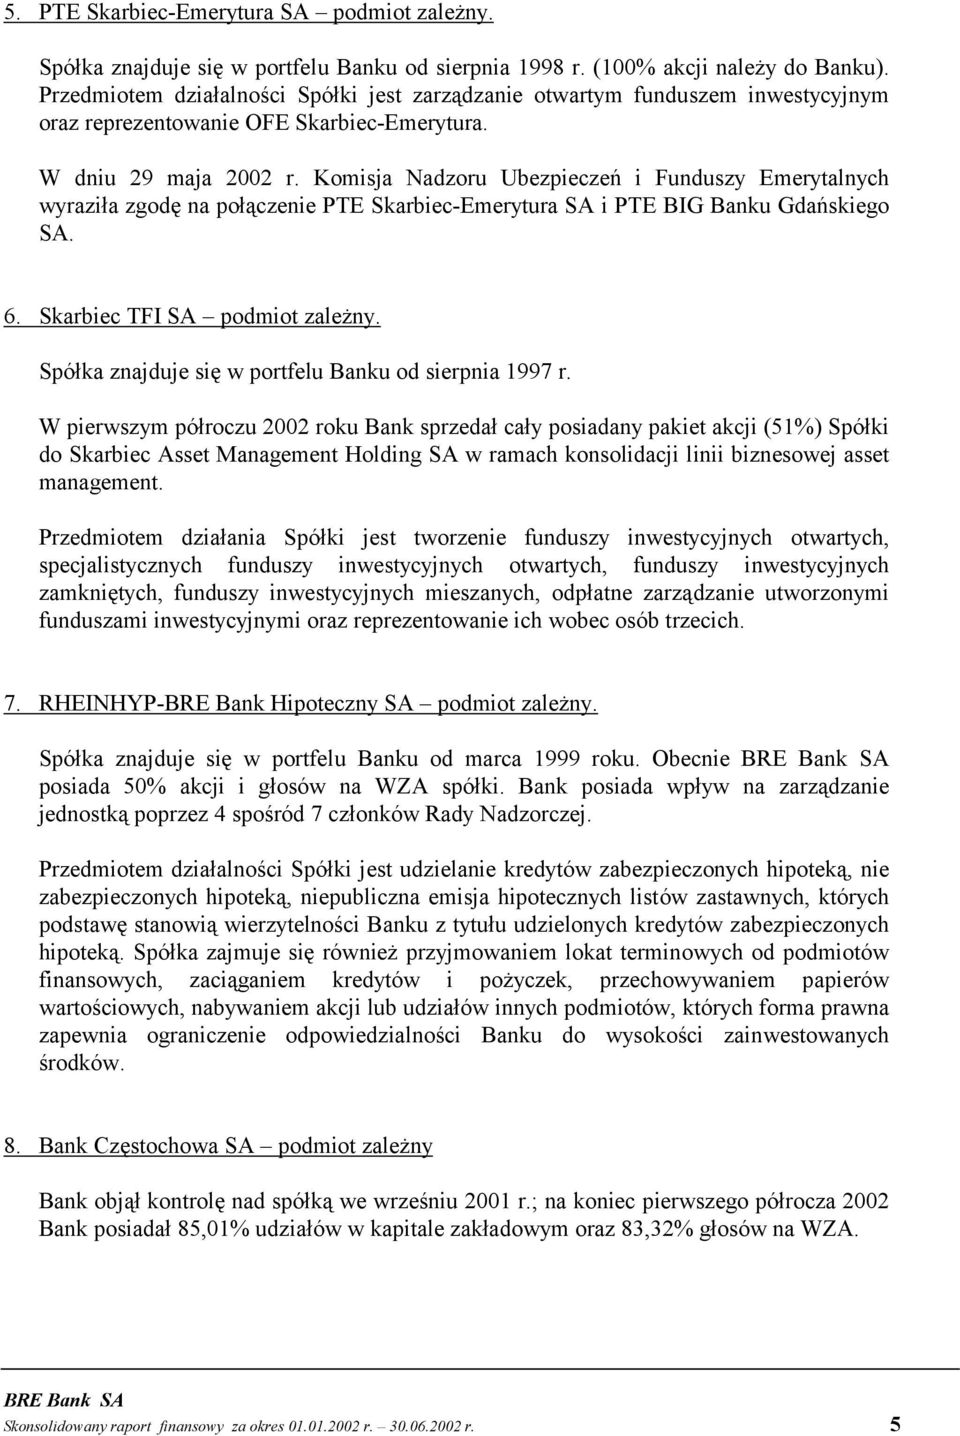 Komisja Nadzoru Ubezpieczeń i Funduszy Emerytalnych wyraziła zgodę na połączenie PTE Skarbiec-Emerytura SA i PTE BIG Banku Gdańskiego SA. 6. Skarbiec TFI SA podmiot zależny.